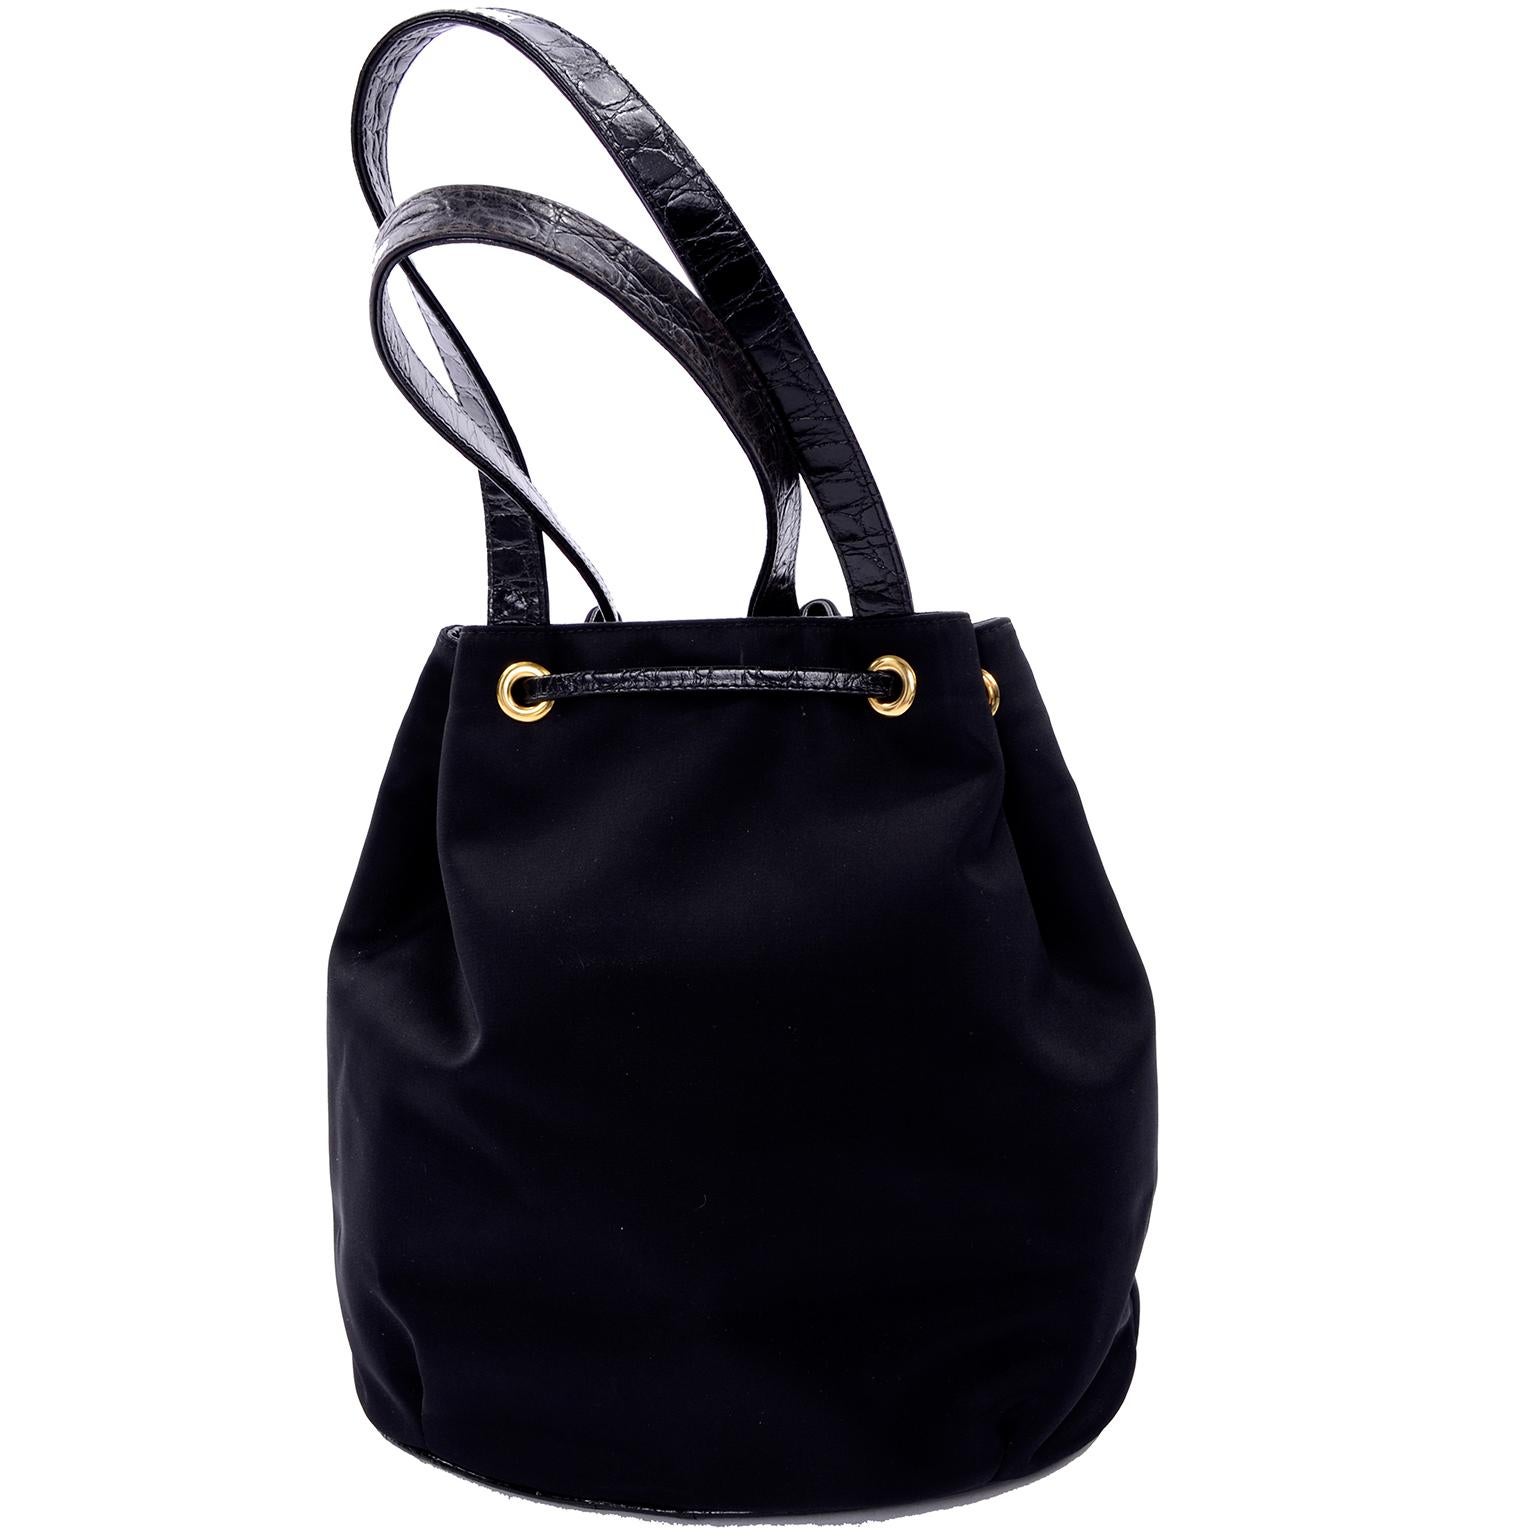 Il s'agit d'un magnifique sac à main noir vintage Gianni Versace Couture, fabriqué en Italie. Le sac est livré avec son sac à poussière d'origine et une lingette pour polir le matériel. Ce superbe sac à main en nylon est orné d'une tête de Méduse